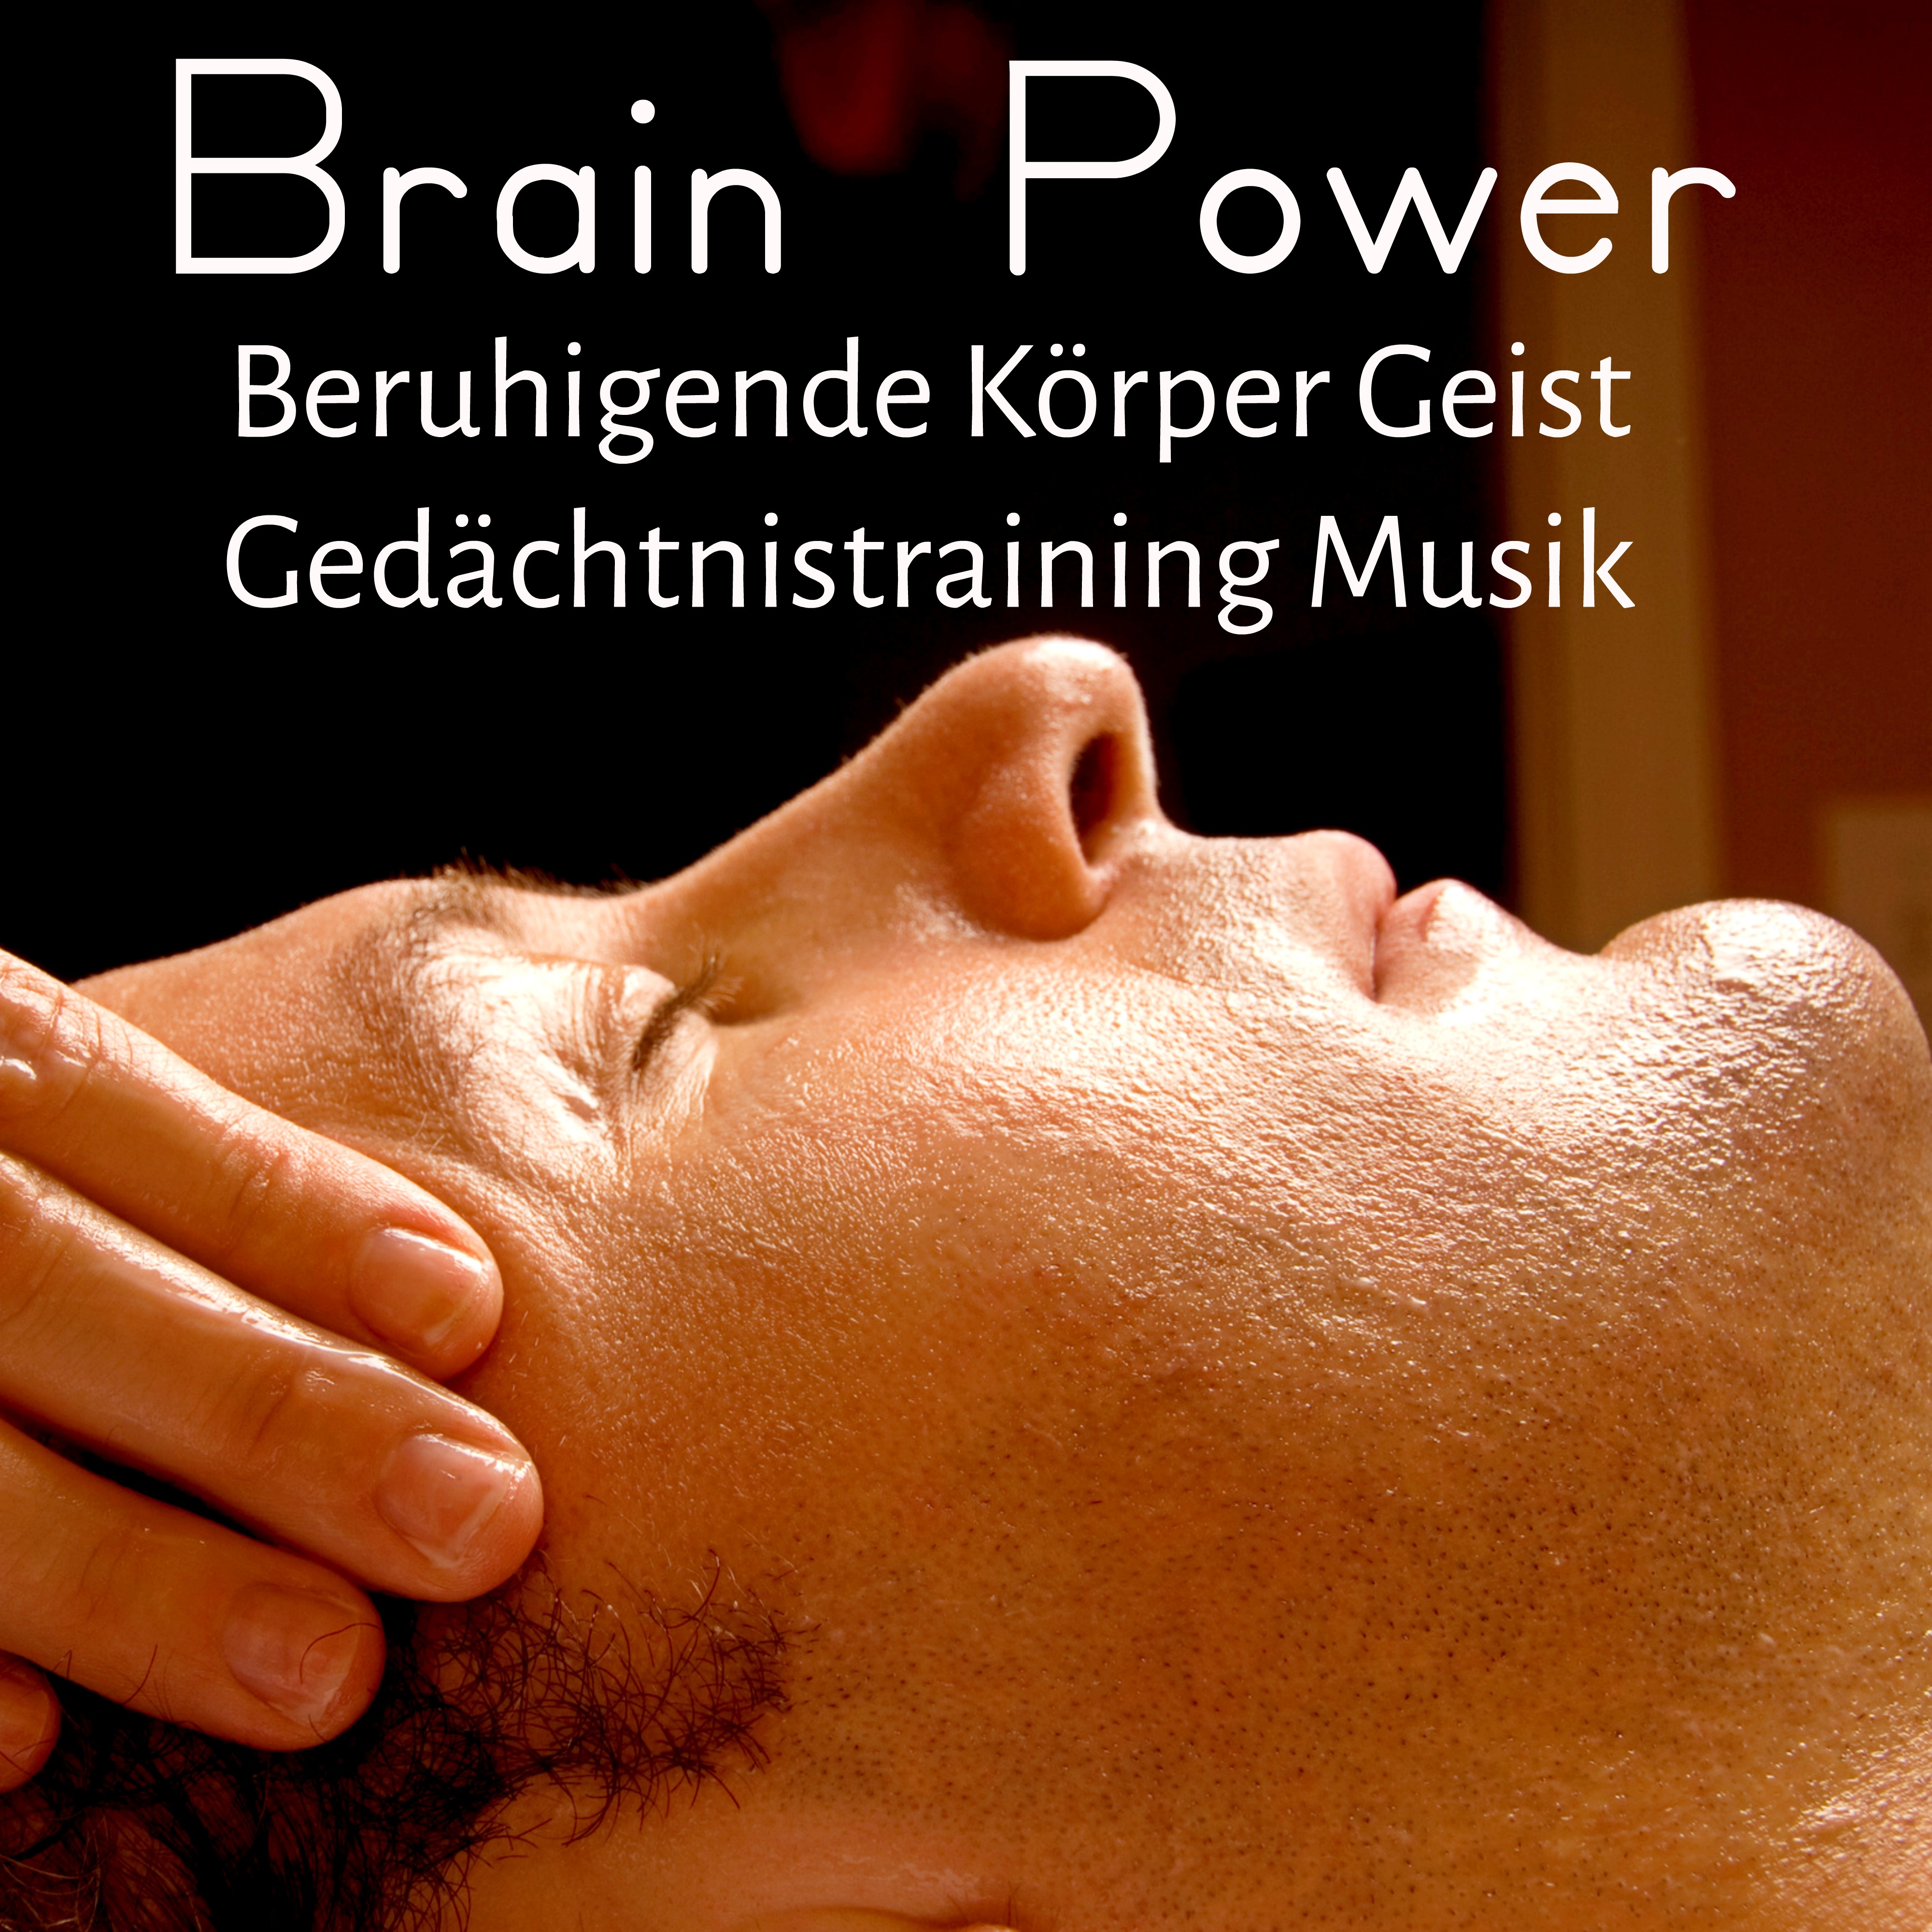 Brain Power - Beruhigende Gedächtnistraining Körper Geist Musik mit Natur Instrumental Heilmeditation Geräusche